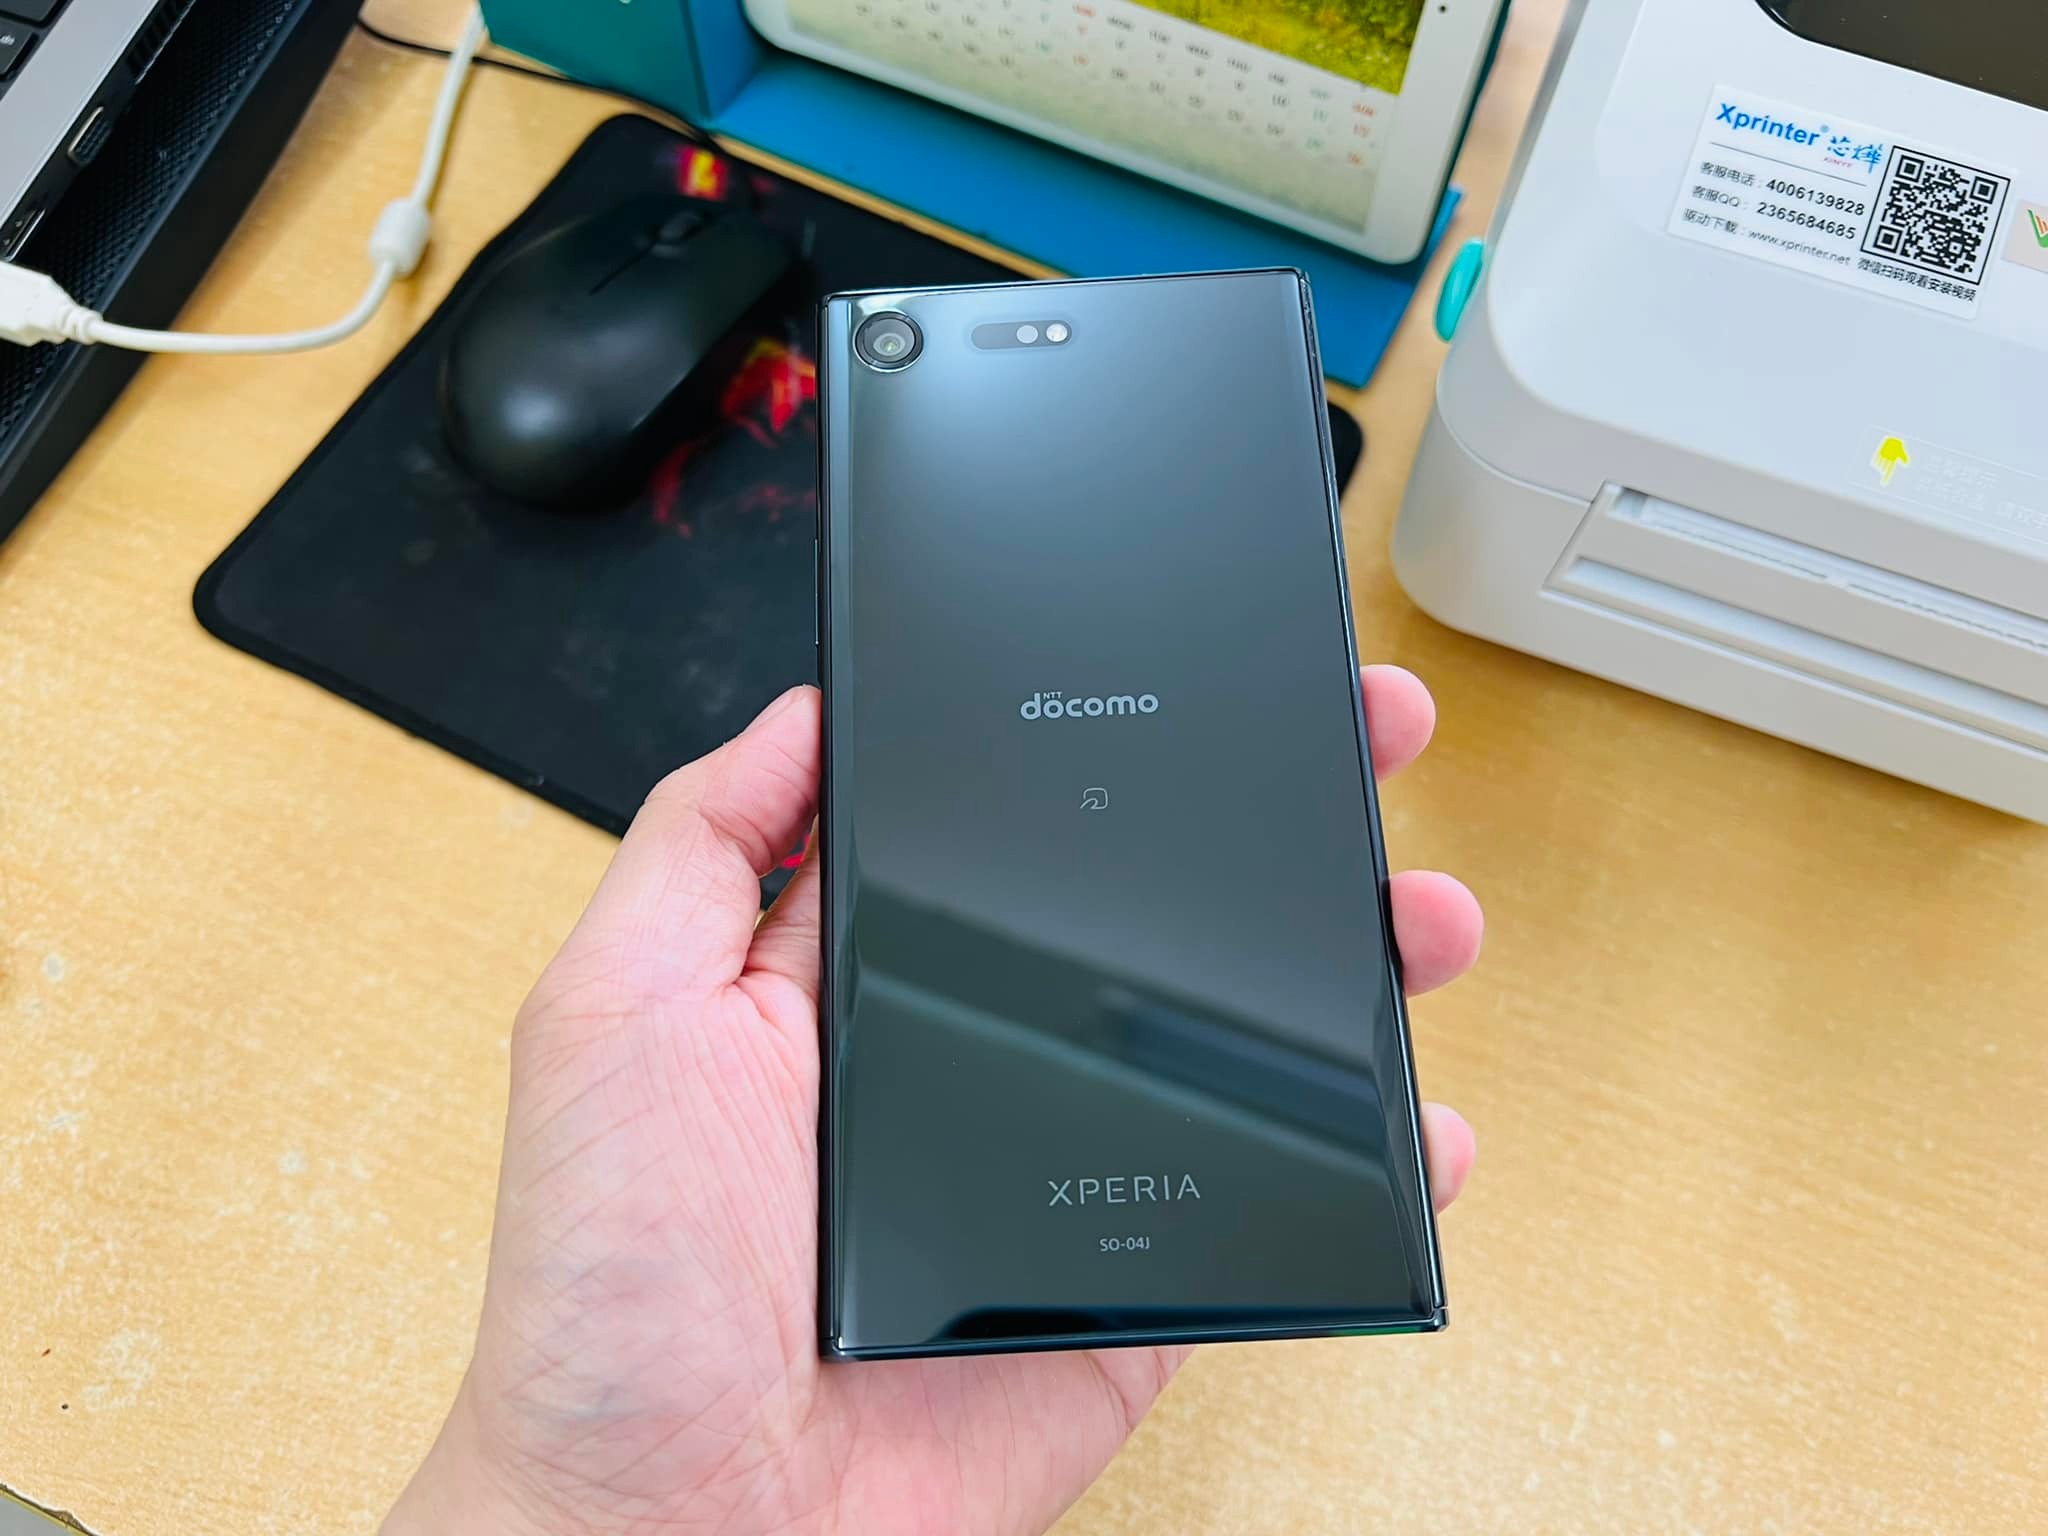 Chiêm ngưỡng vẻ đẹp tinh tế và hiệu năng mạnh mẽ của Sony XZ Premium Docomo Nhật. Với màn hình 4K HDR và camera chụp slow motion 960fps, chiếc điện thoại này sẽ mang lại trải nghiệm giải trí chưa từng có.